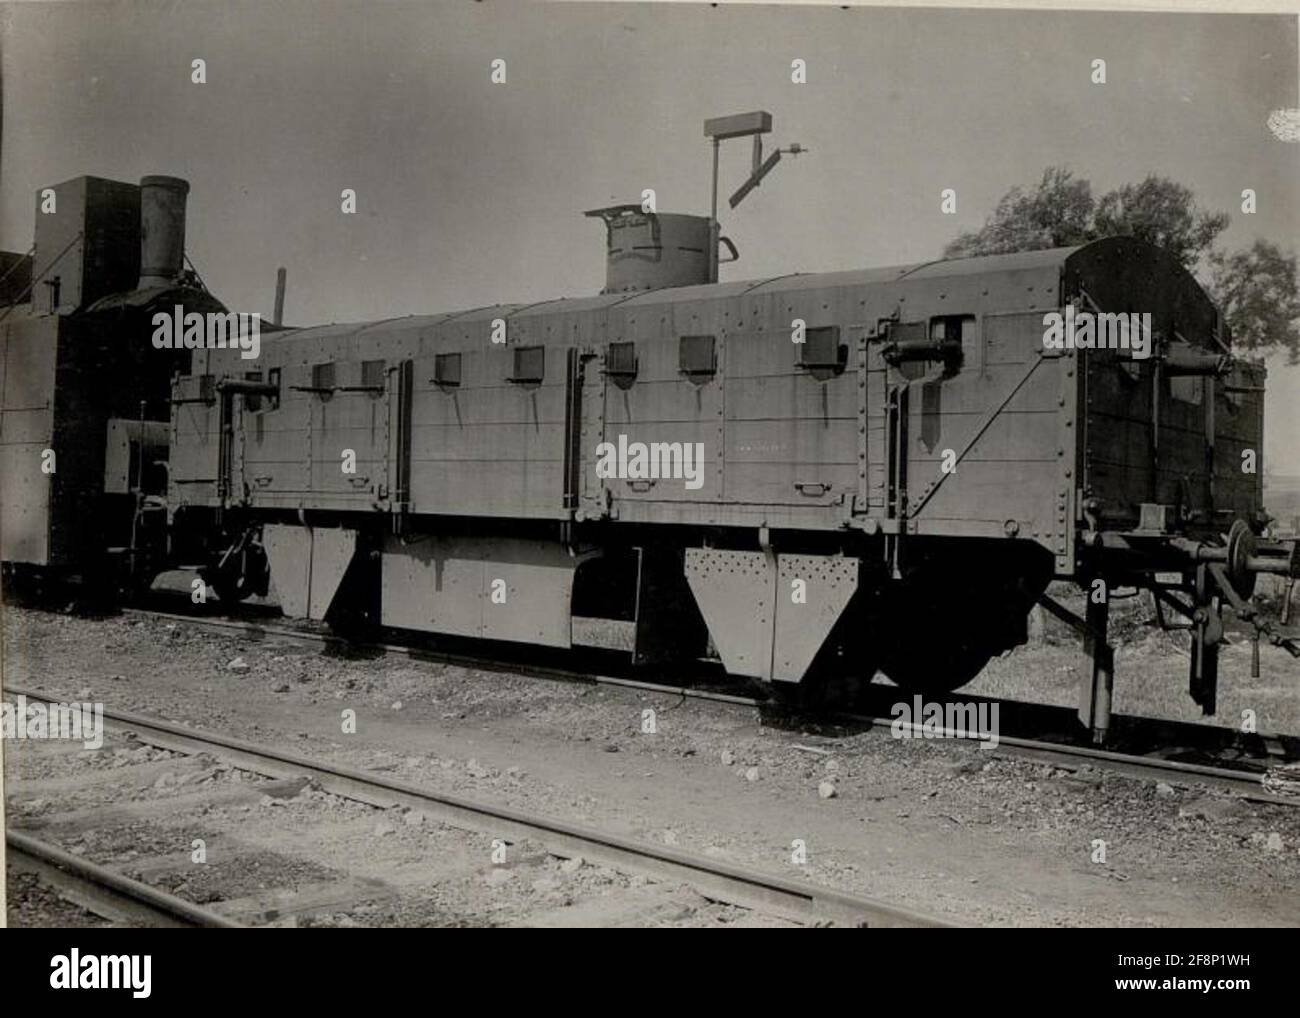 Panzer train Hinowice. Stock Photo